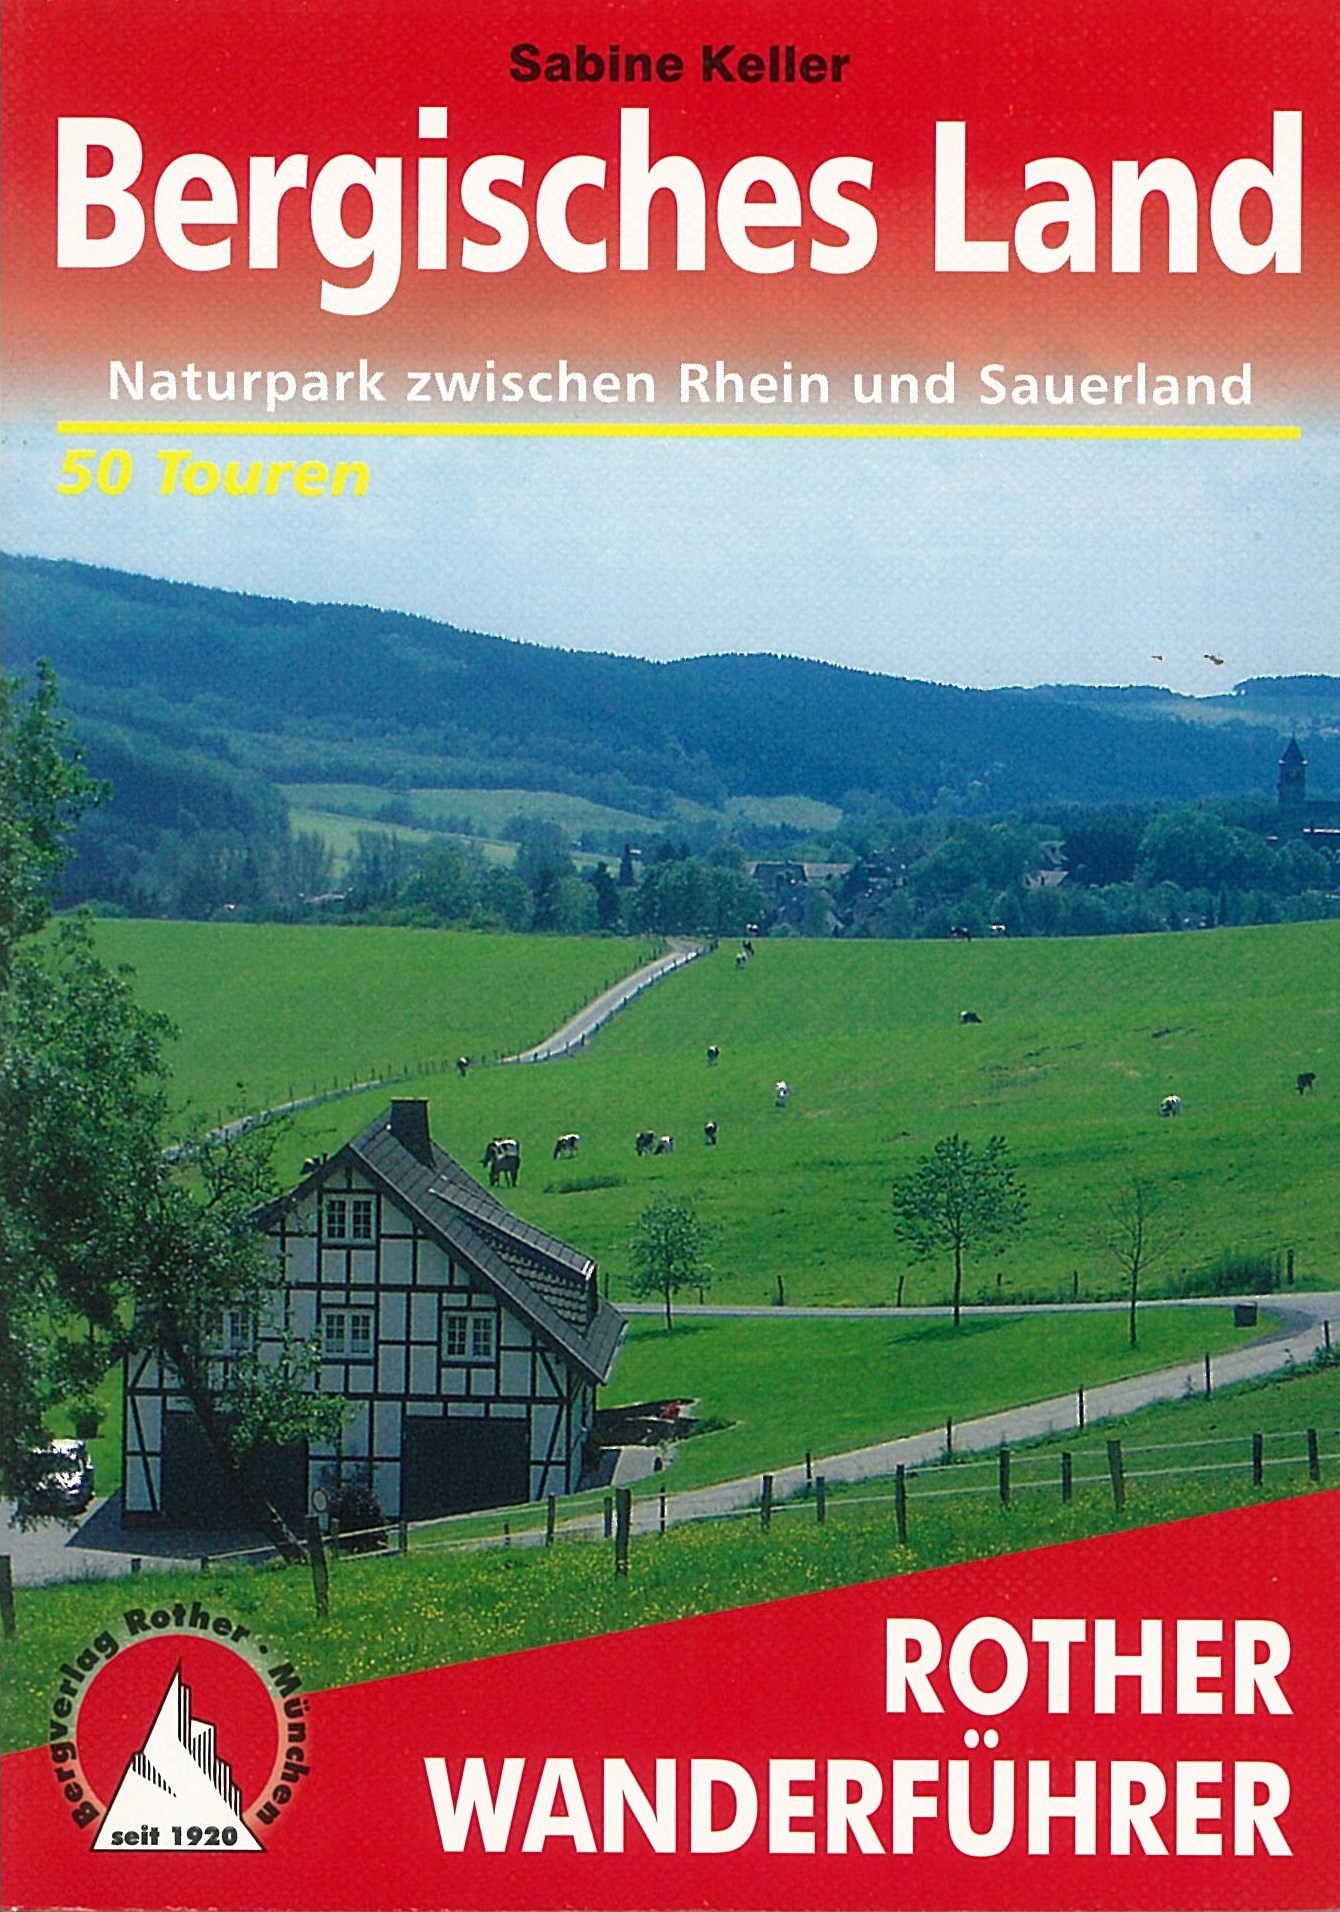 Bergisches Land Wanderführer Rother / 2017